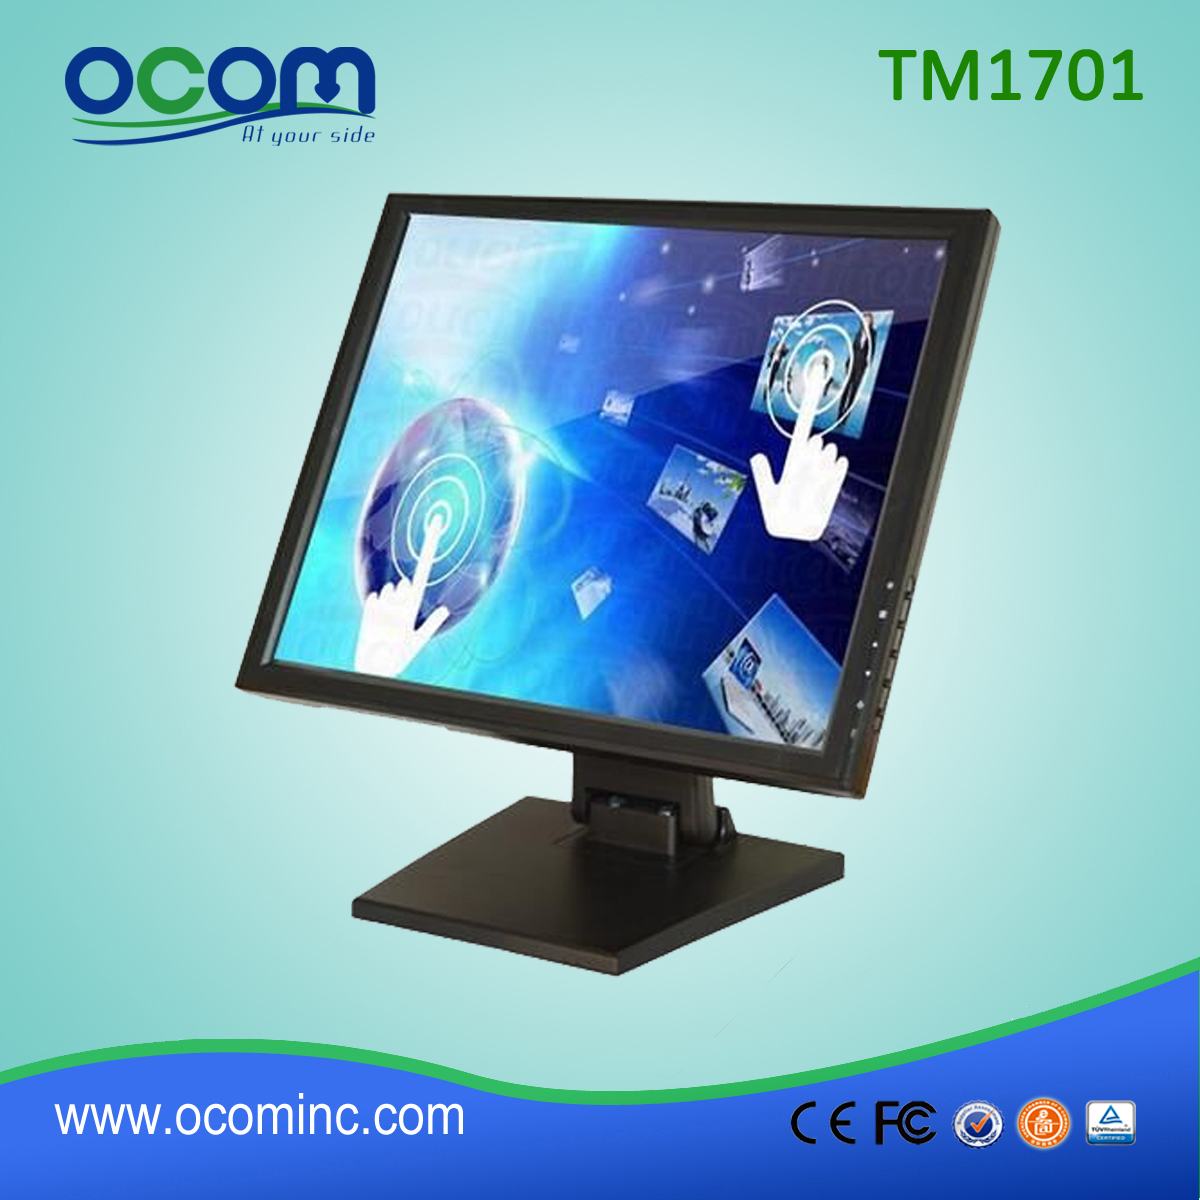 TM1701 impermeabile 17 pollici monitor touch screen a buon mercato